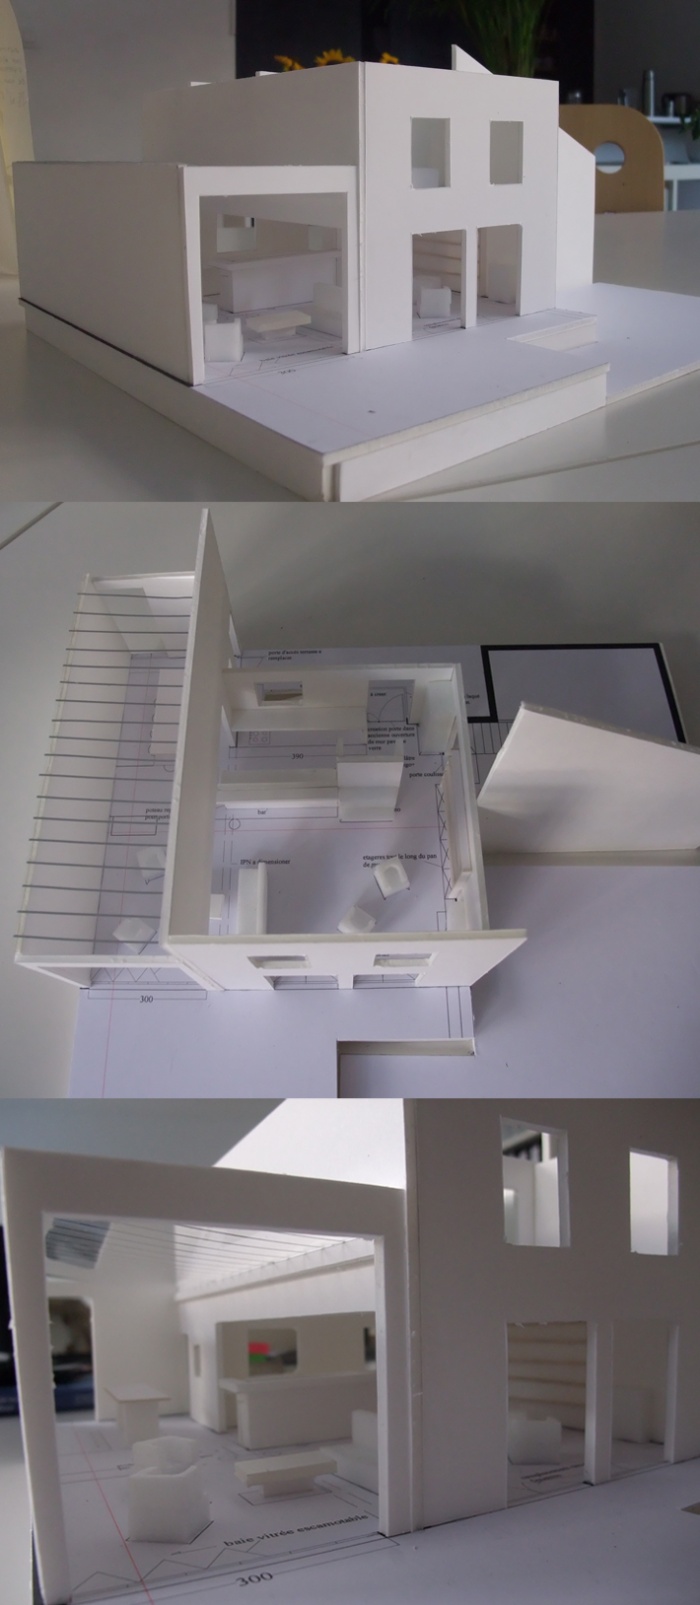 Extension + rhabilitation partielle d'une maison individuelle : maquettes